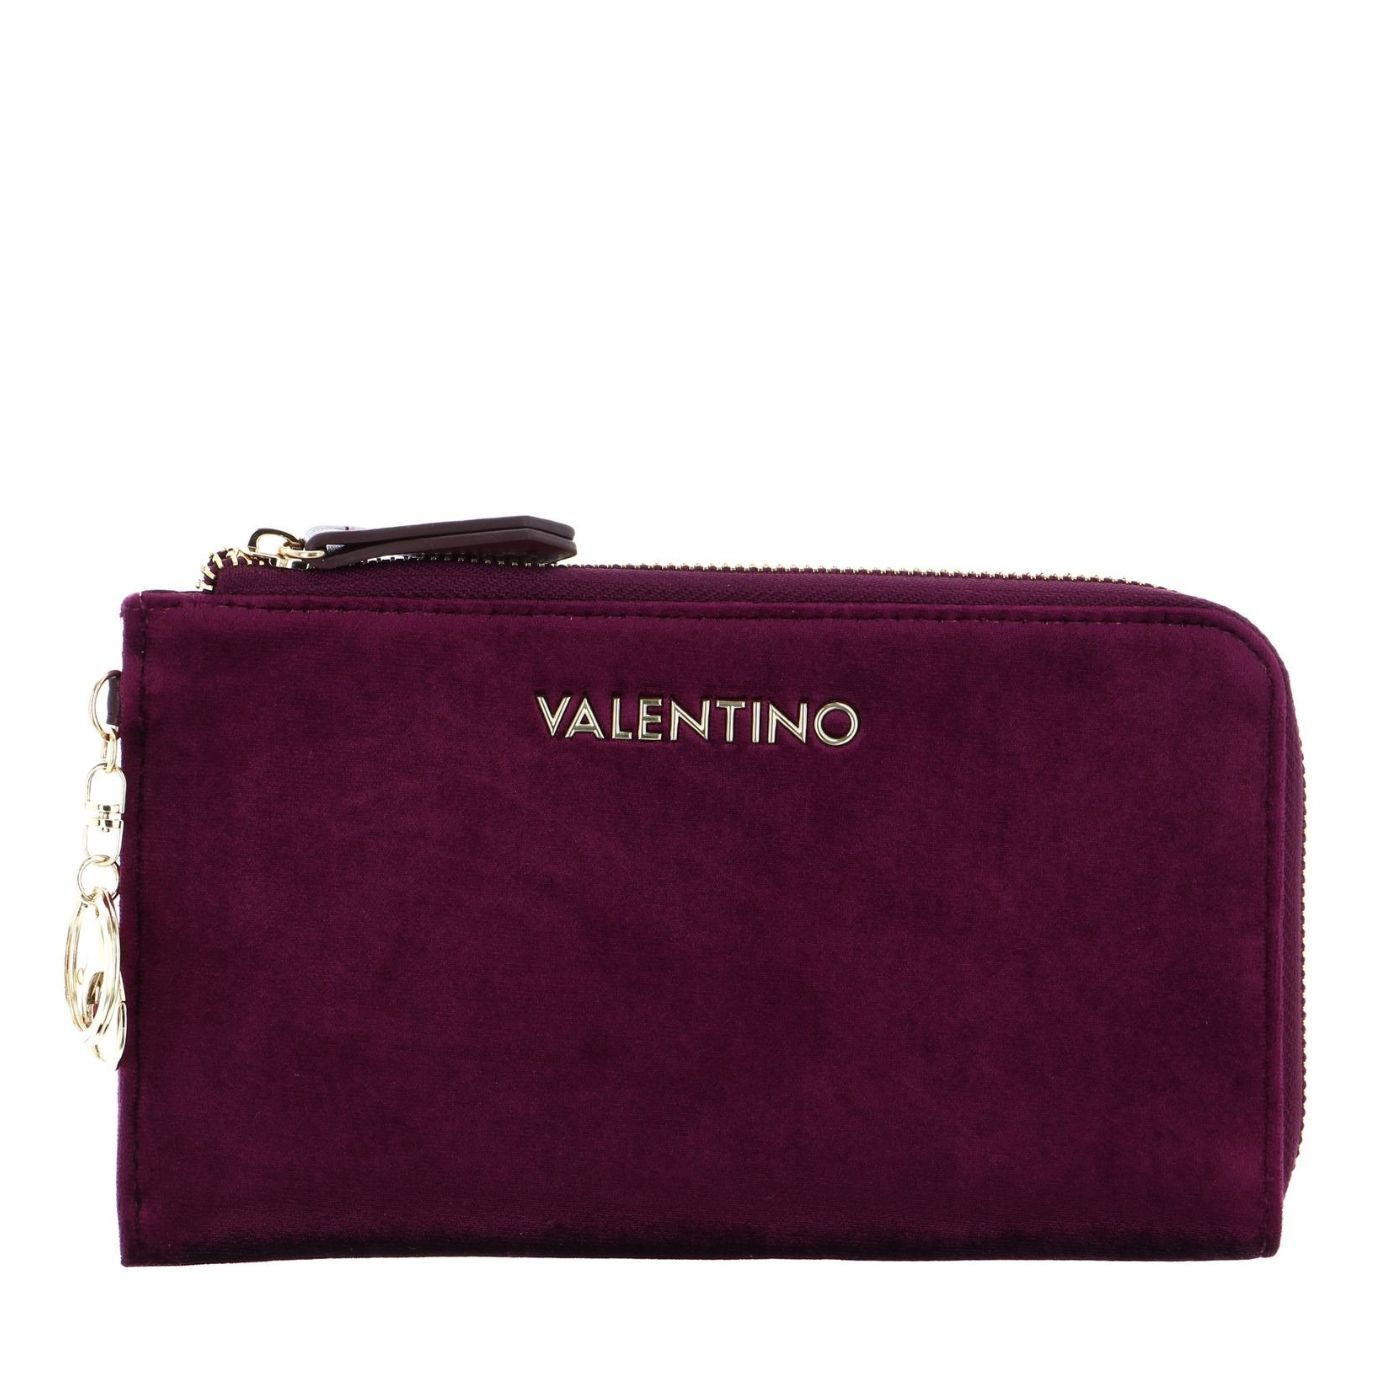 Valentino Mistletoe kozmetika táska I Bordeaux